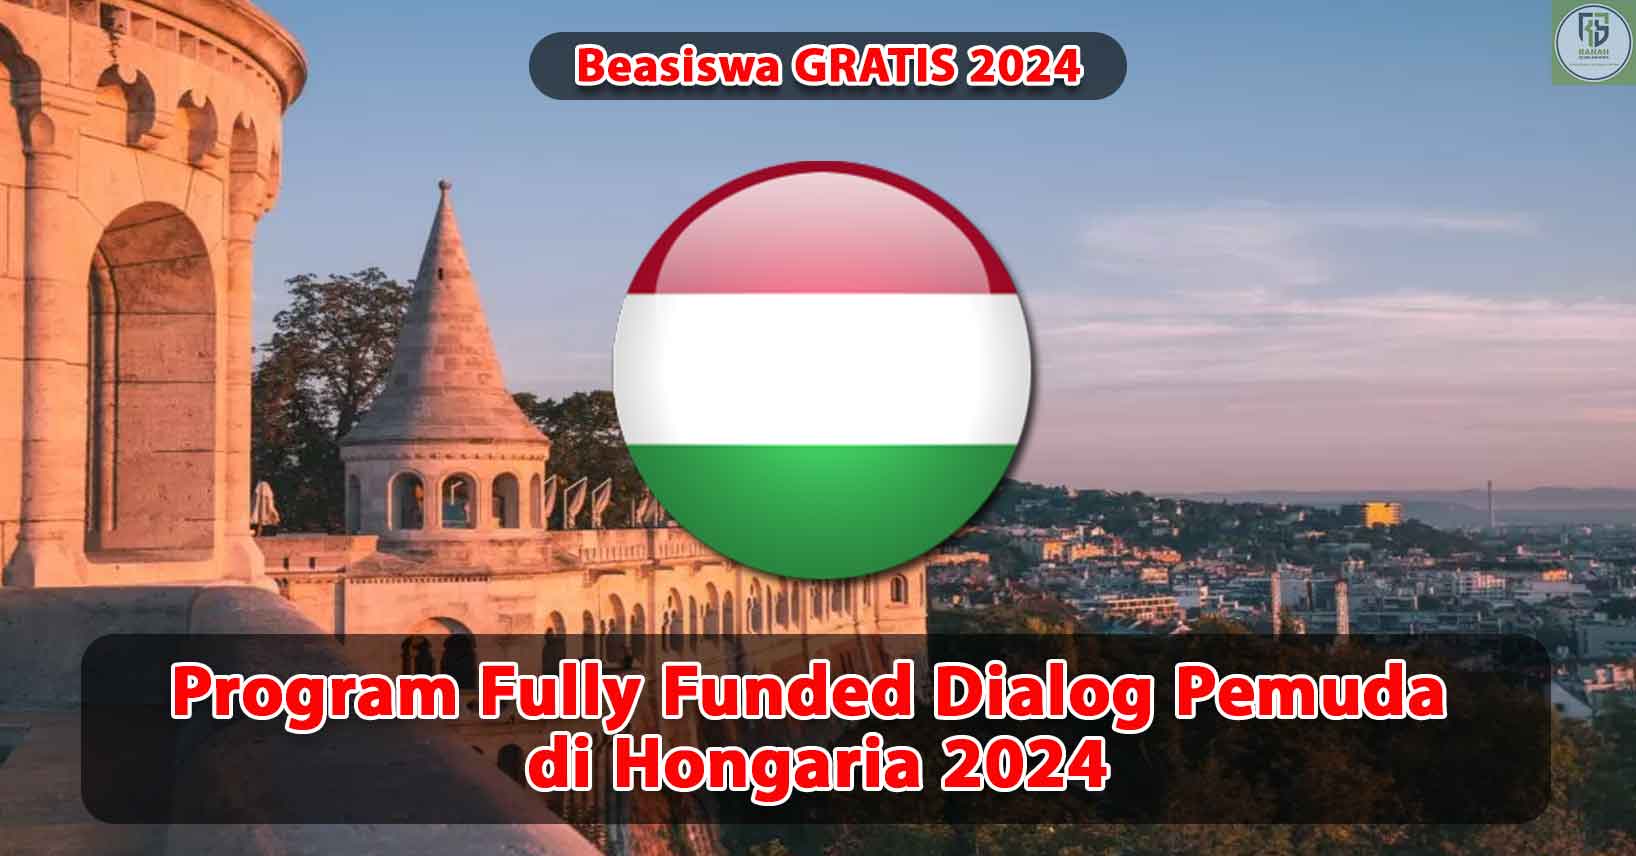 Program-Fully-Funded-Dialog-Pemuda-di-Hongaria-2024